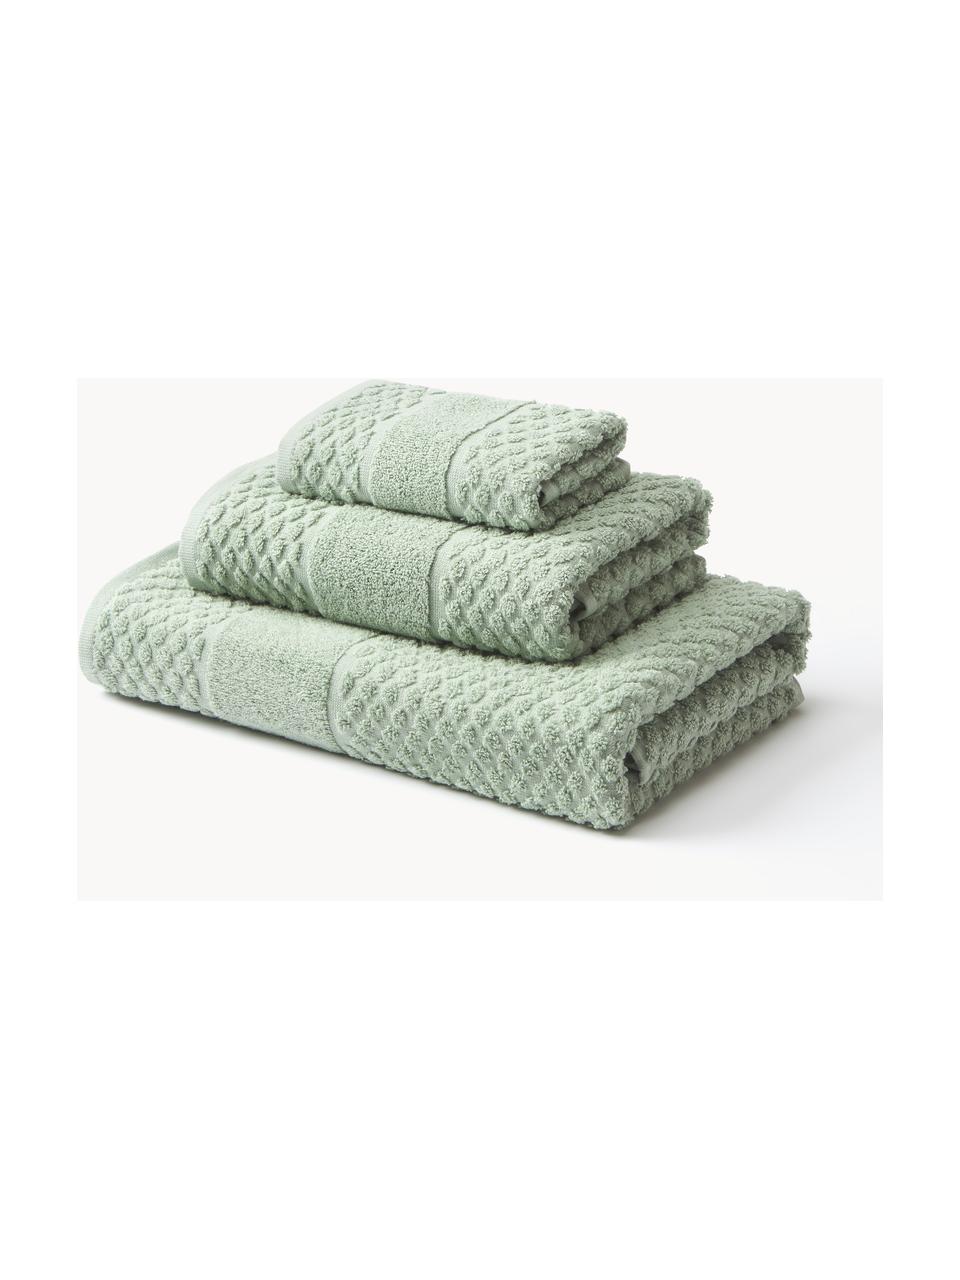 Set 3 asciugamani con motivo a nido d'ape Katharina, Verde salvia, Set da 3 (asciugamano ospite, asciugamano e telo bagno)